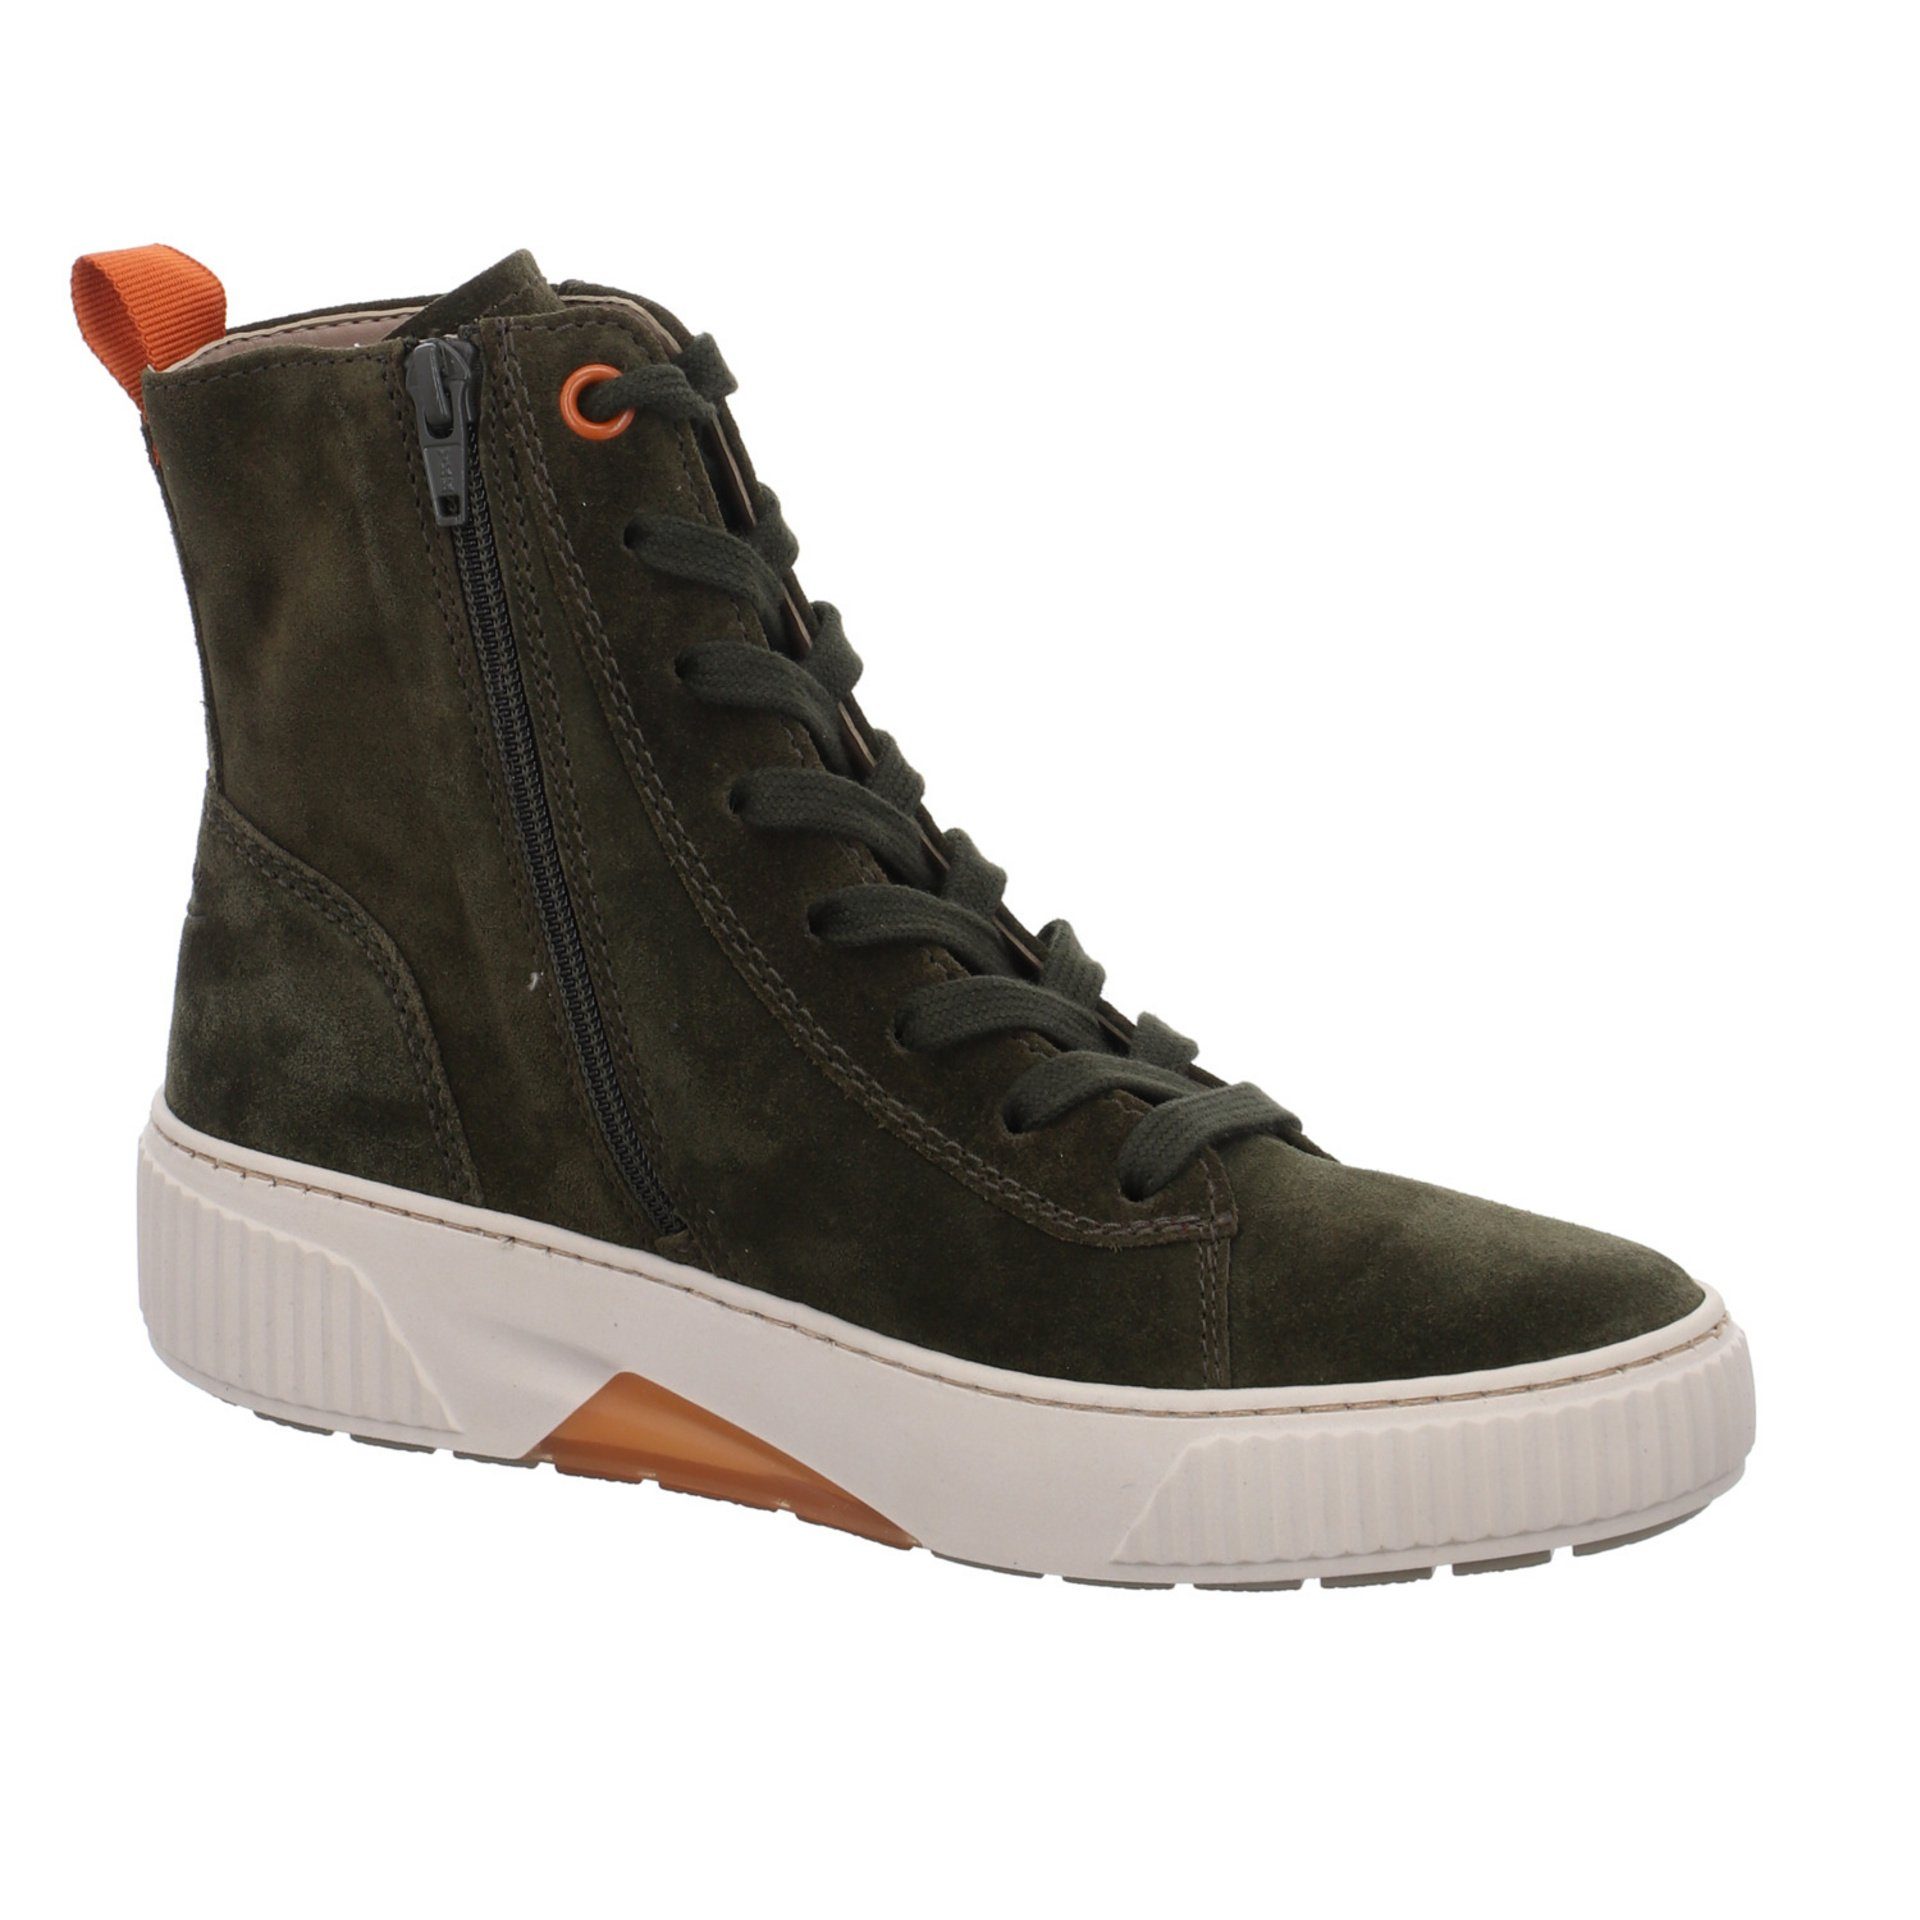 Gabor Damen Stiefel Schuhe Boots Elegant (07301826) Stiefel bosco/orange Veloursleder Klassisch